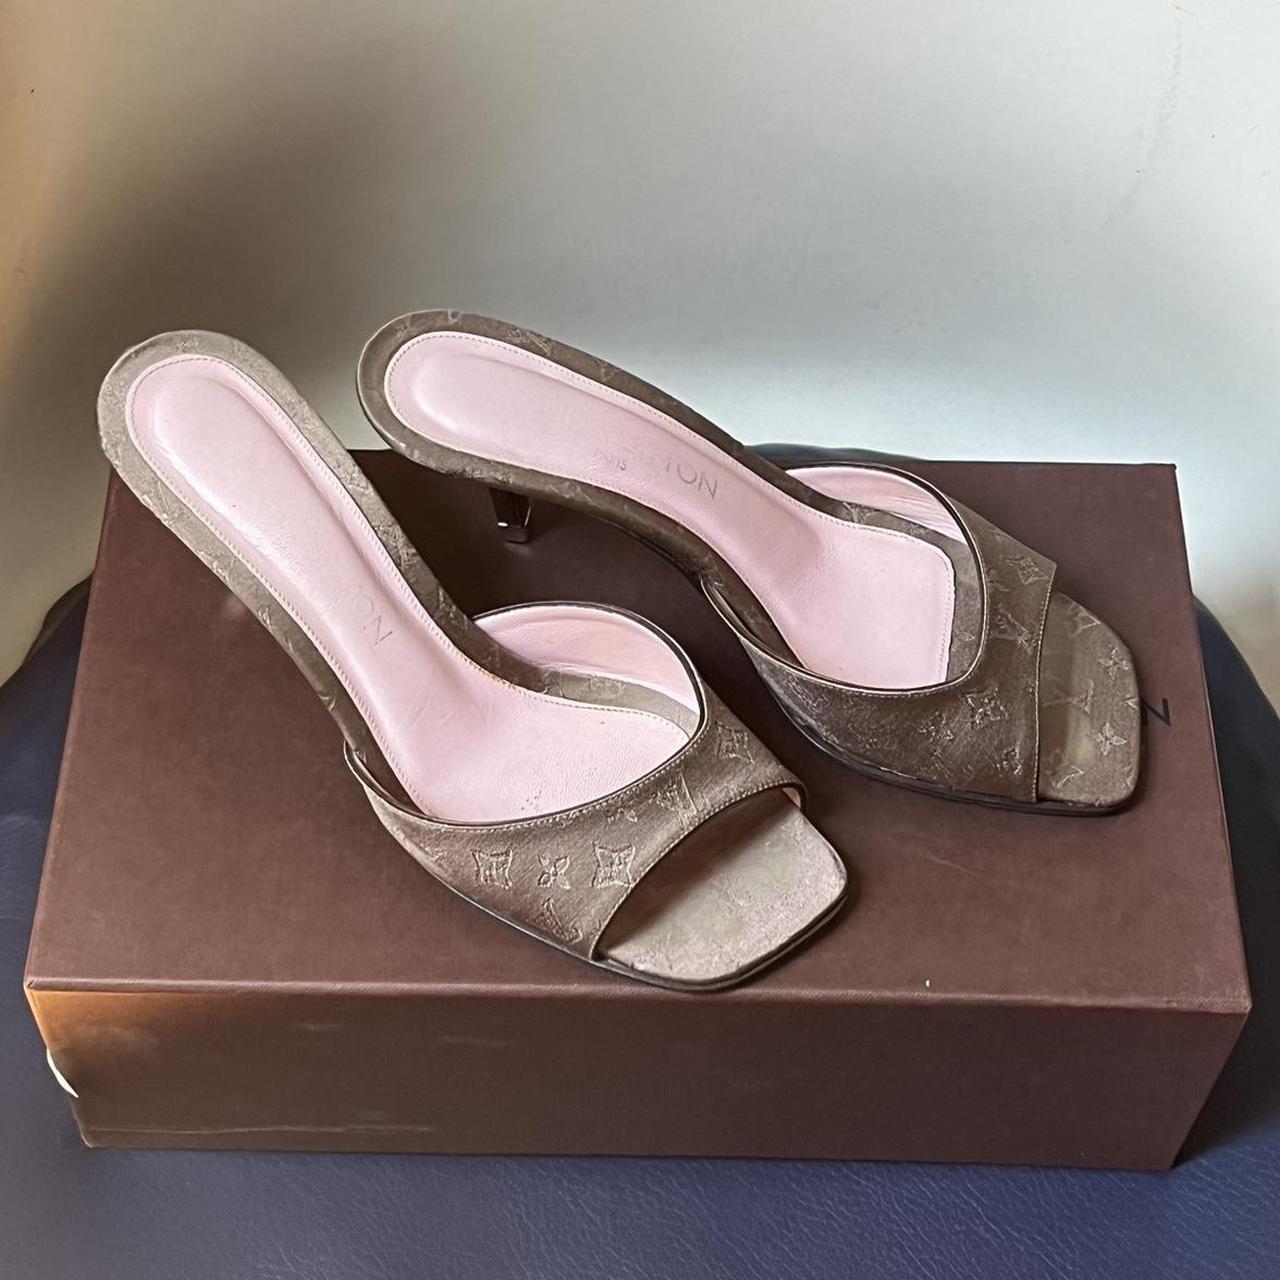 Louis Vuitton women's sandal. AUTHENTIC. SIZE 6.5. - Depop